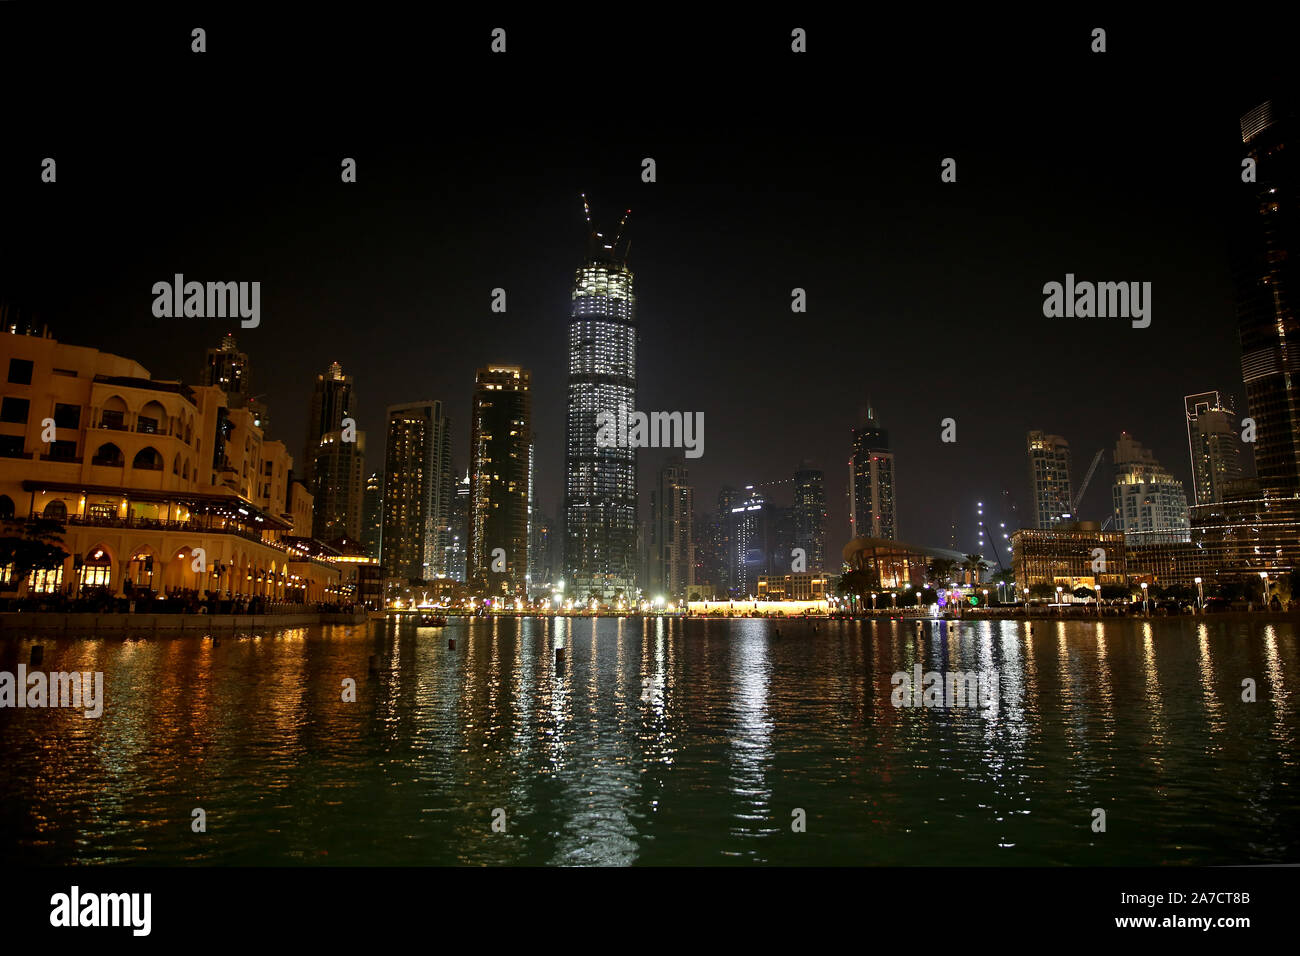 En el centro de la ciudad por la noche con todas las skyscrappers illluminated y reflejándose en el lago, Dubai, Emiratos Árabes Unidos. Foto de stock